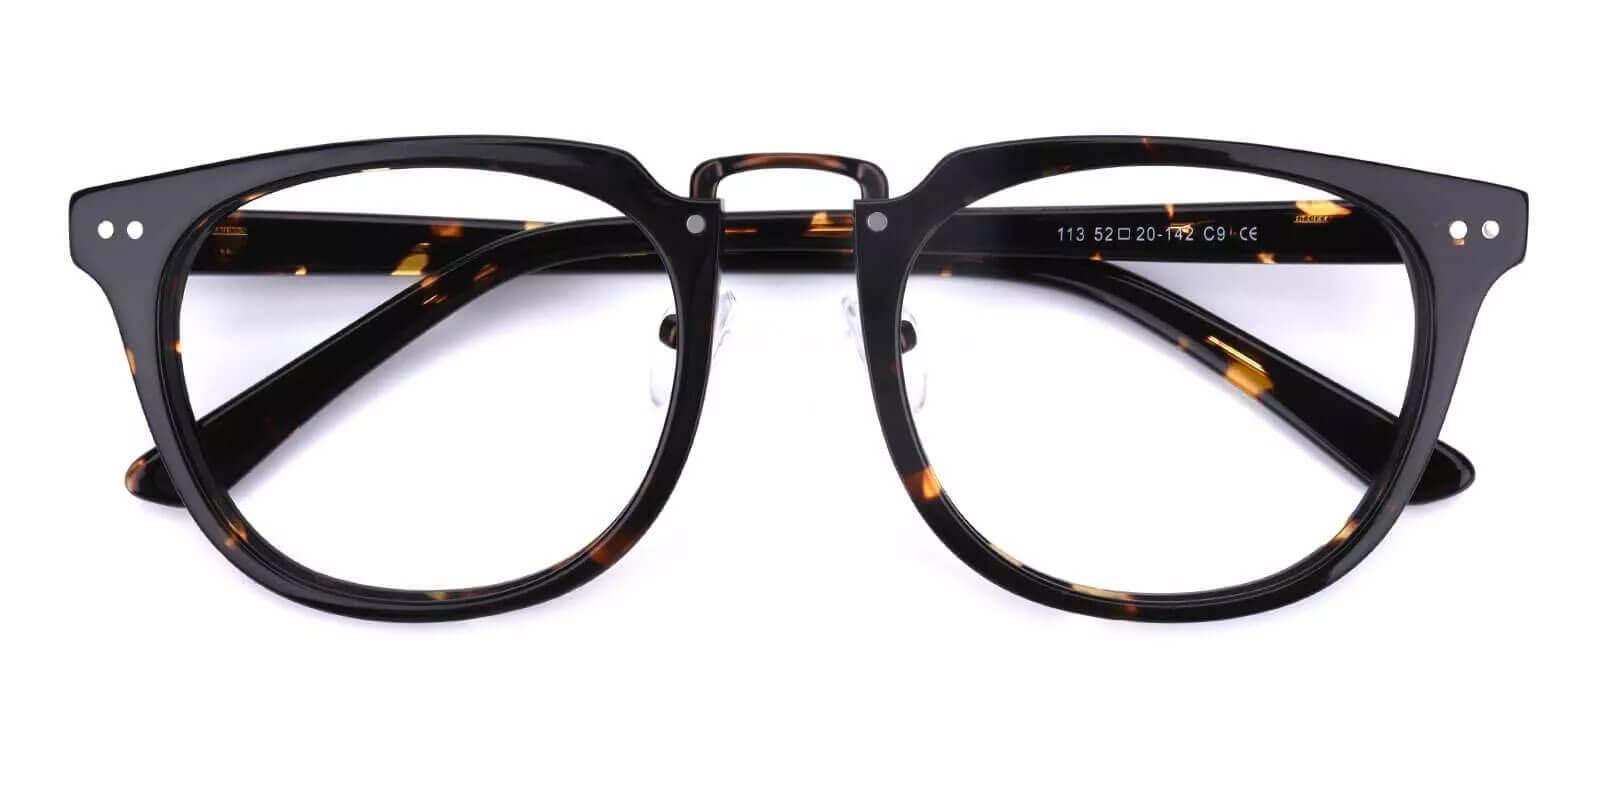 Latrobe Tortoise Acetate Eyeglasses , NosePads Frames from ABBE Glasses